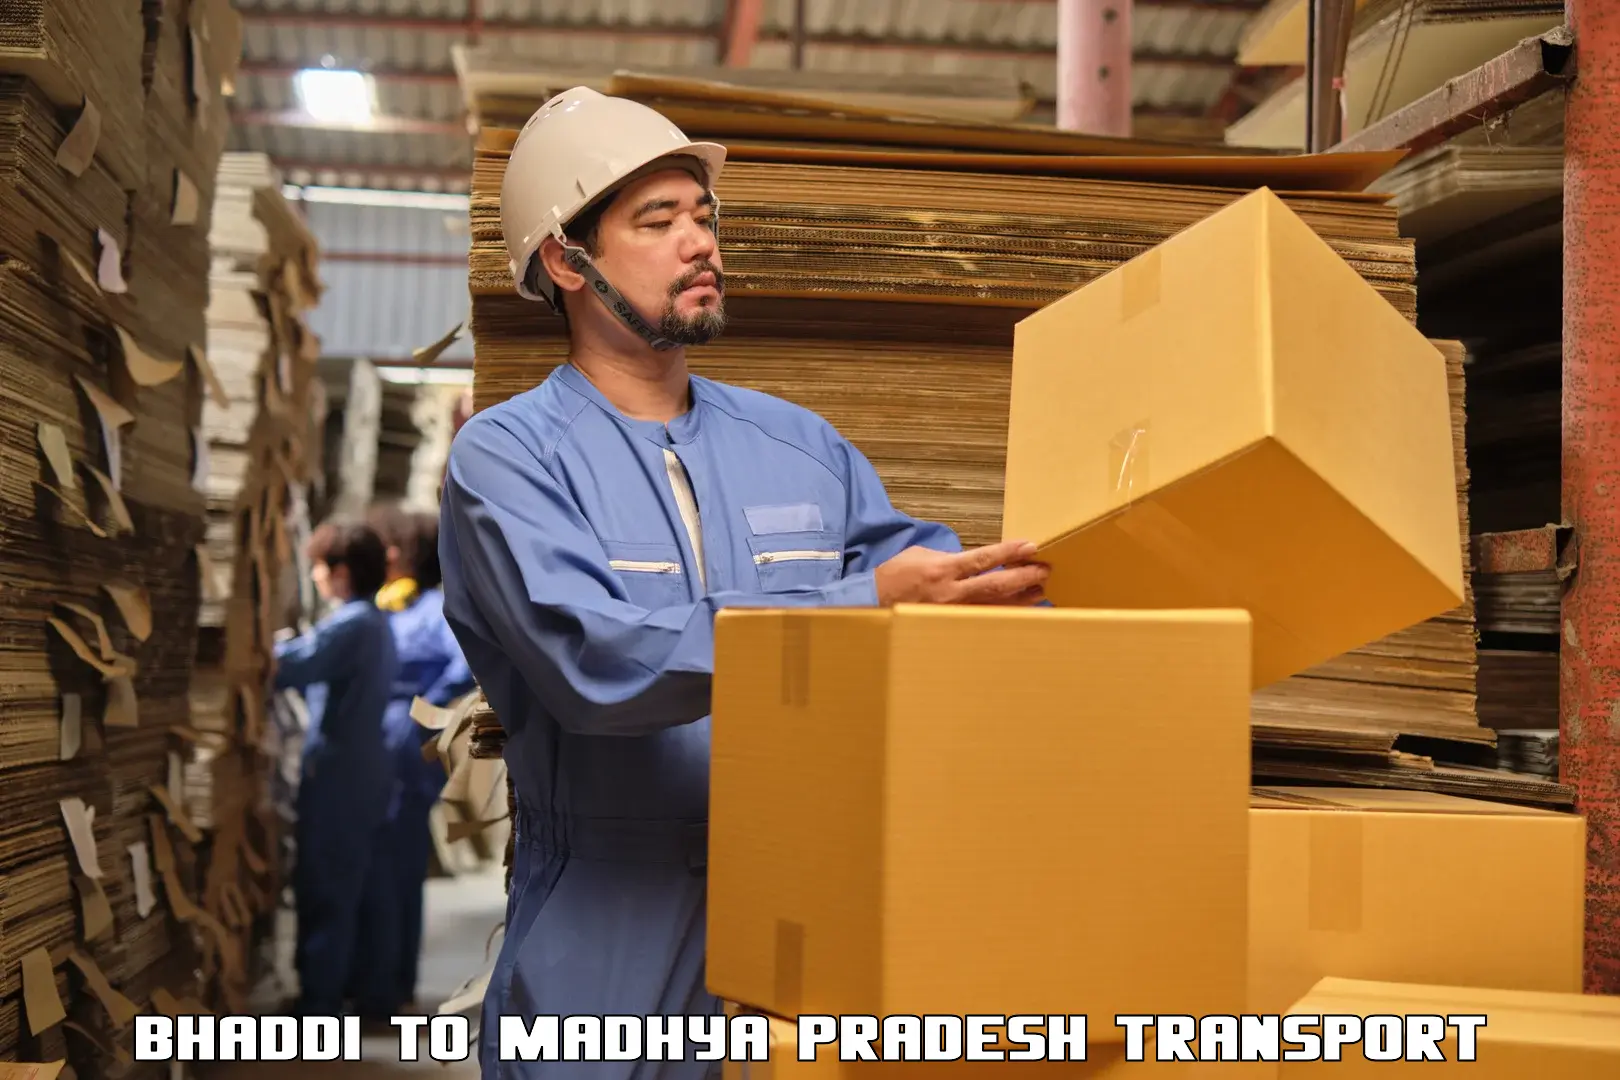 Shipping partner Bhaddi to Mundi